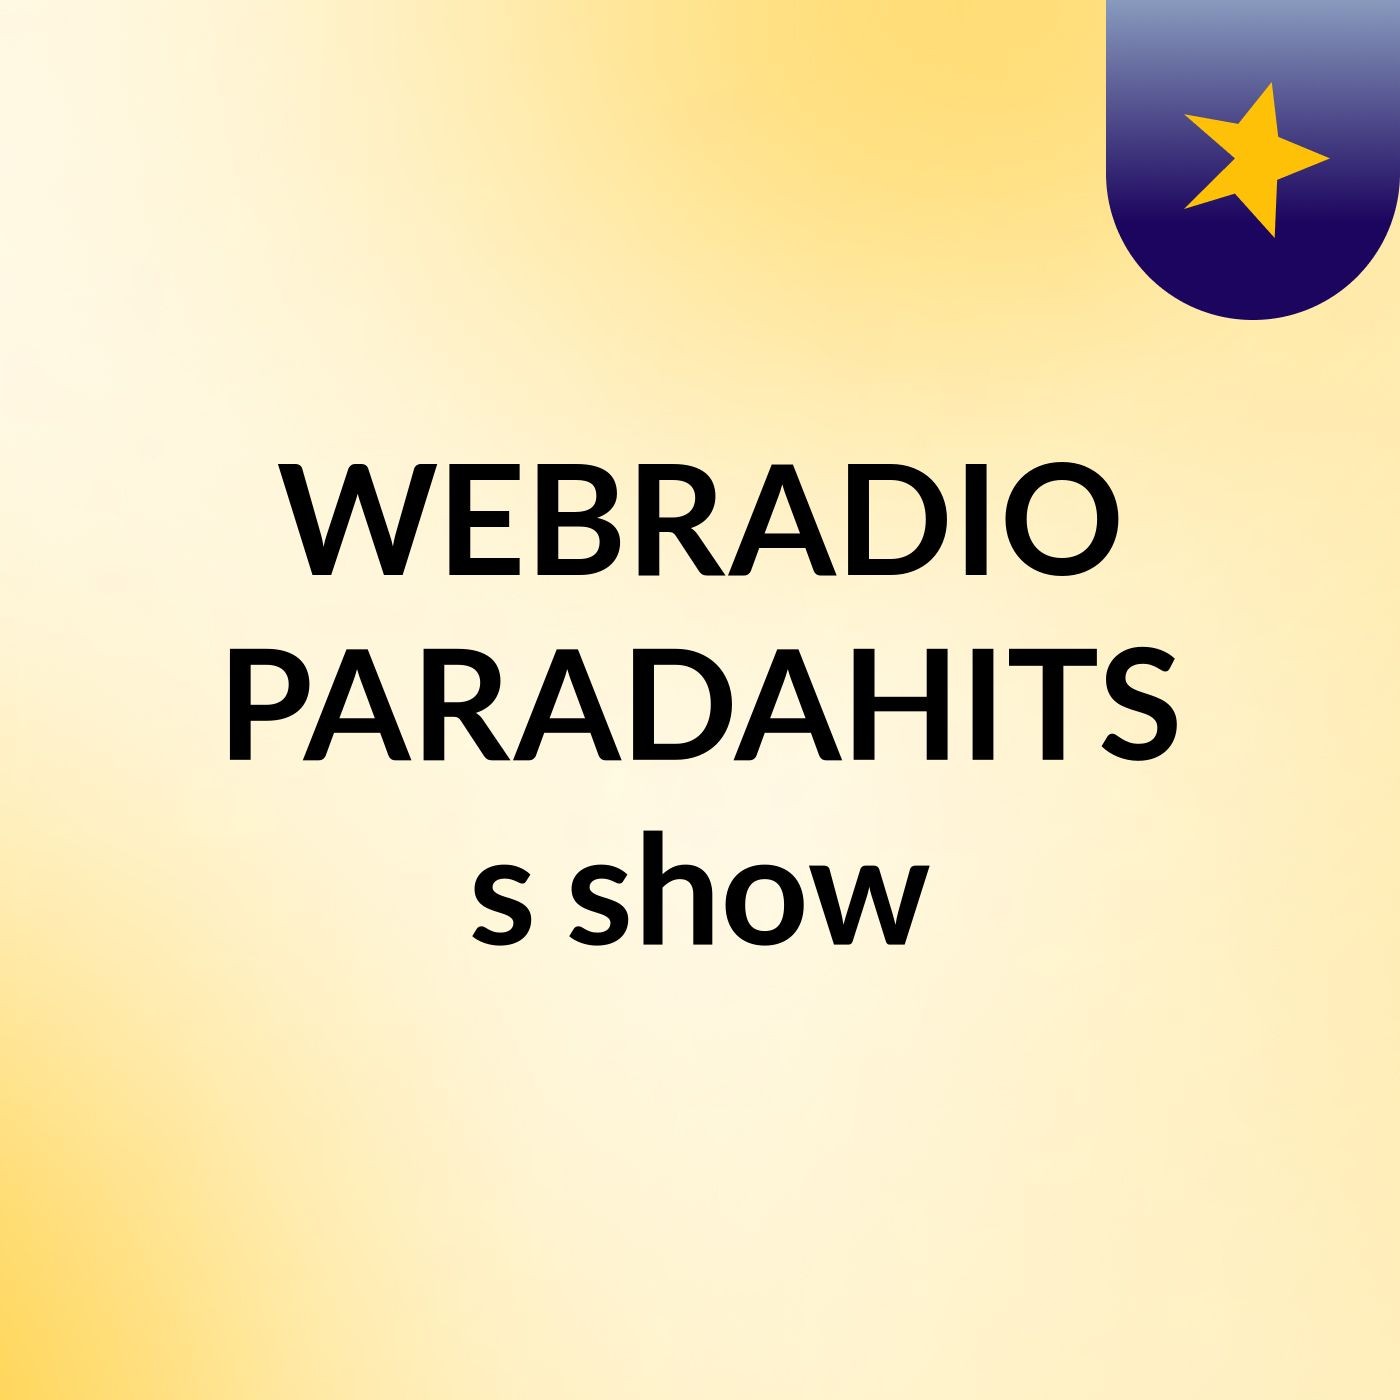 WEBRADIO PARADAHITS's show